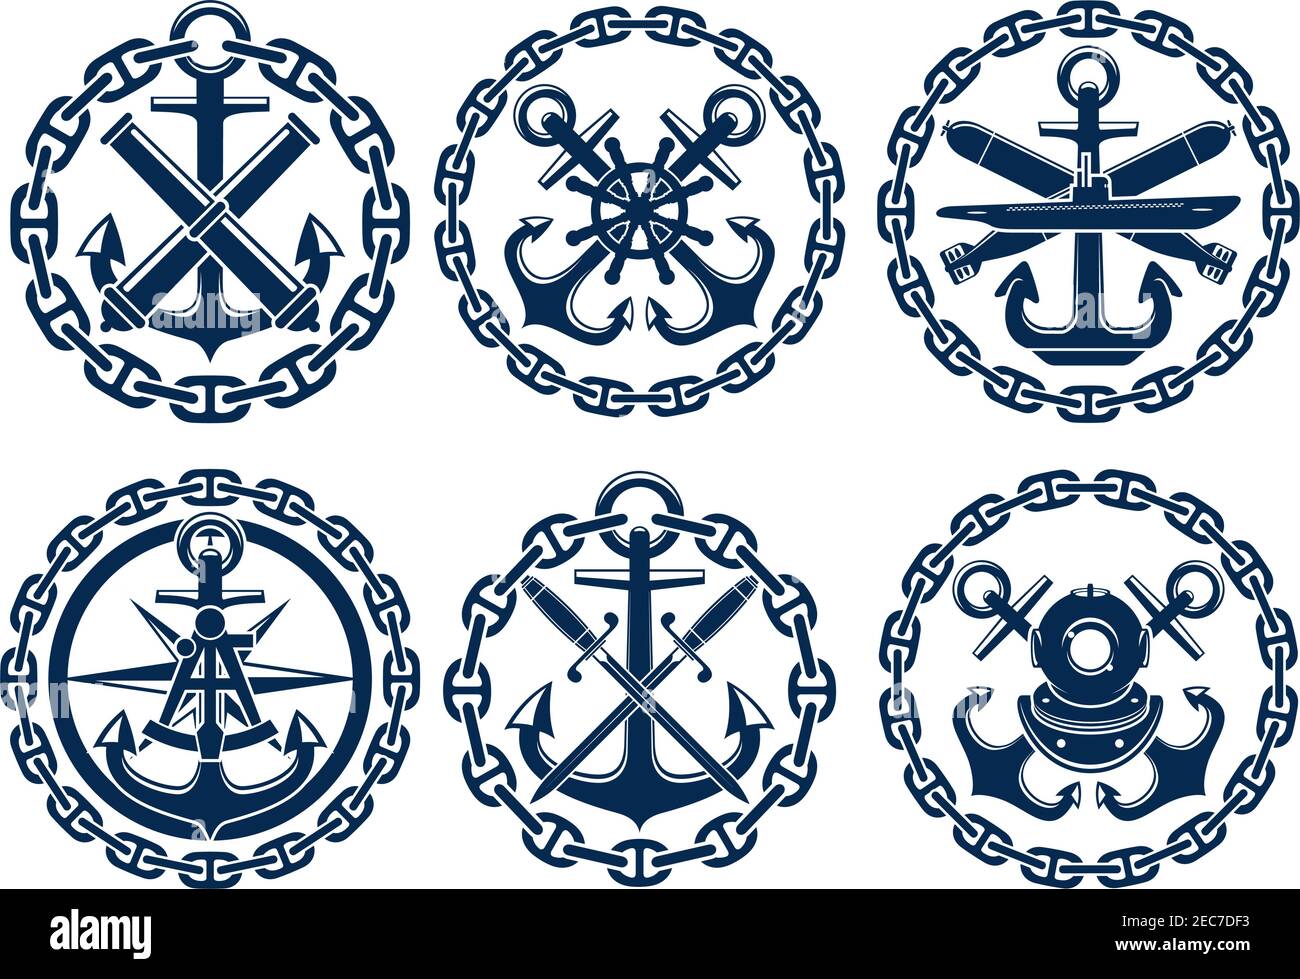 Marine und nautische Embleme, Ikonen, Abzeichen. Grafische Insignien Elemente von Anker, Kette, Lenkrad, U-Boot, Sextant, Bomben Kanonen Schwerter Stock Vektor